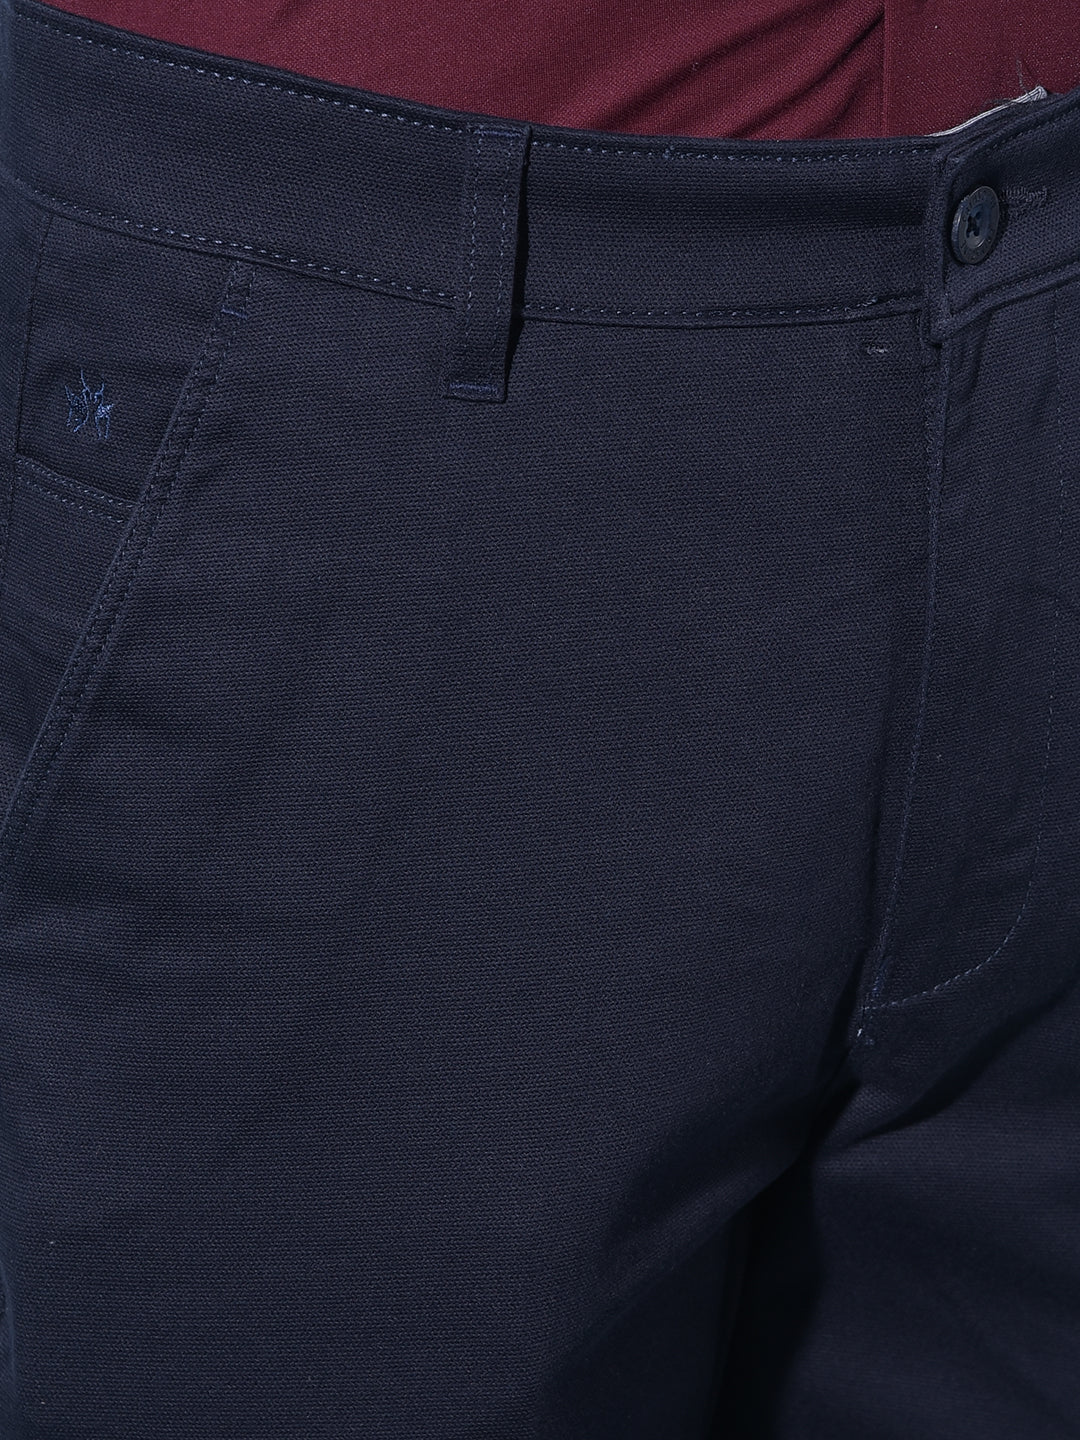 Blue Straight Cotton Trousers-Men Trousers-Crimsoune Club